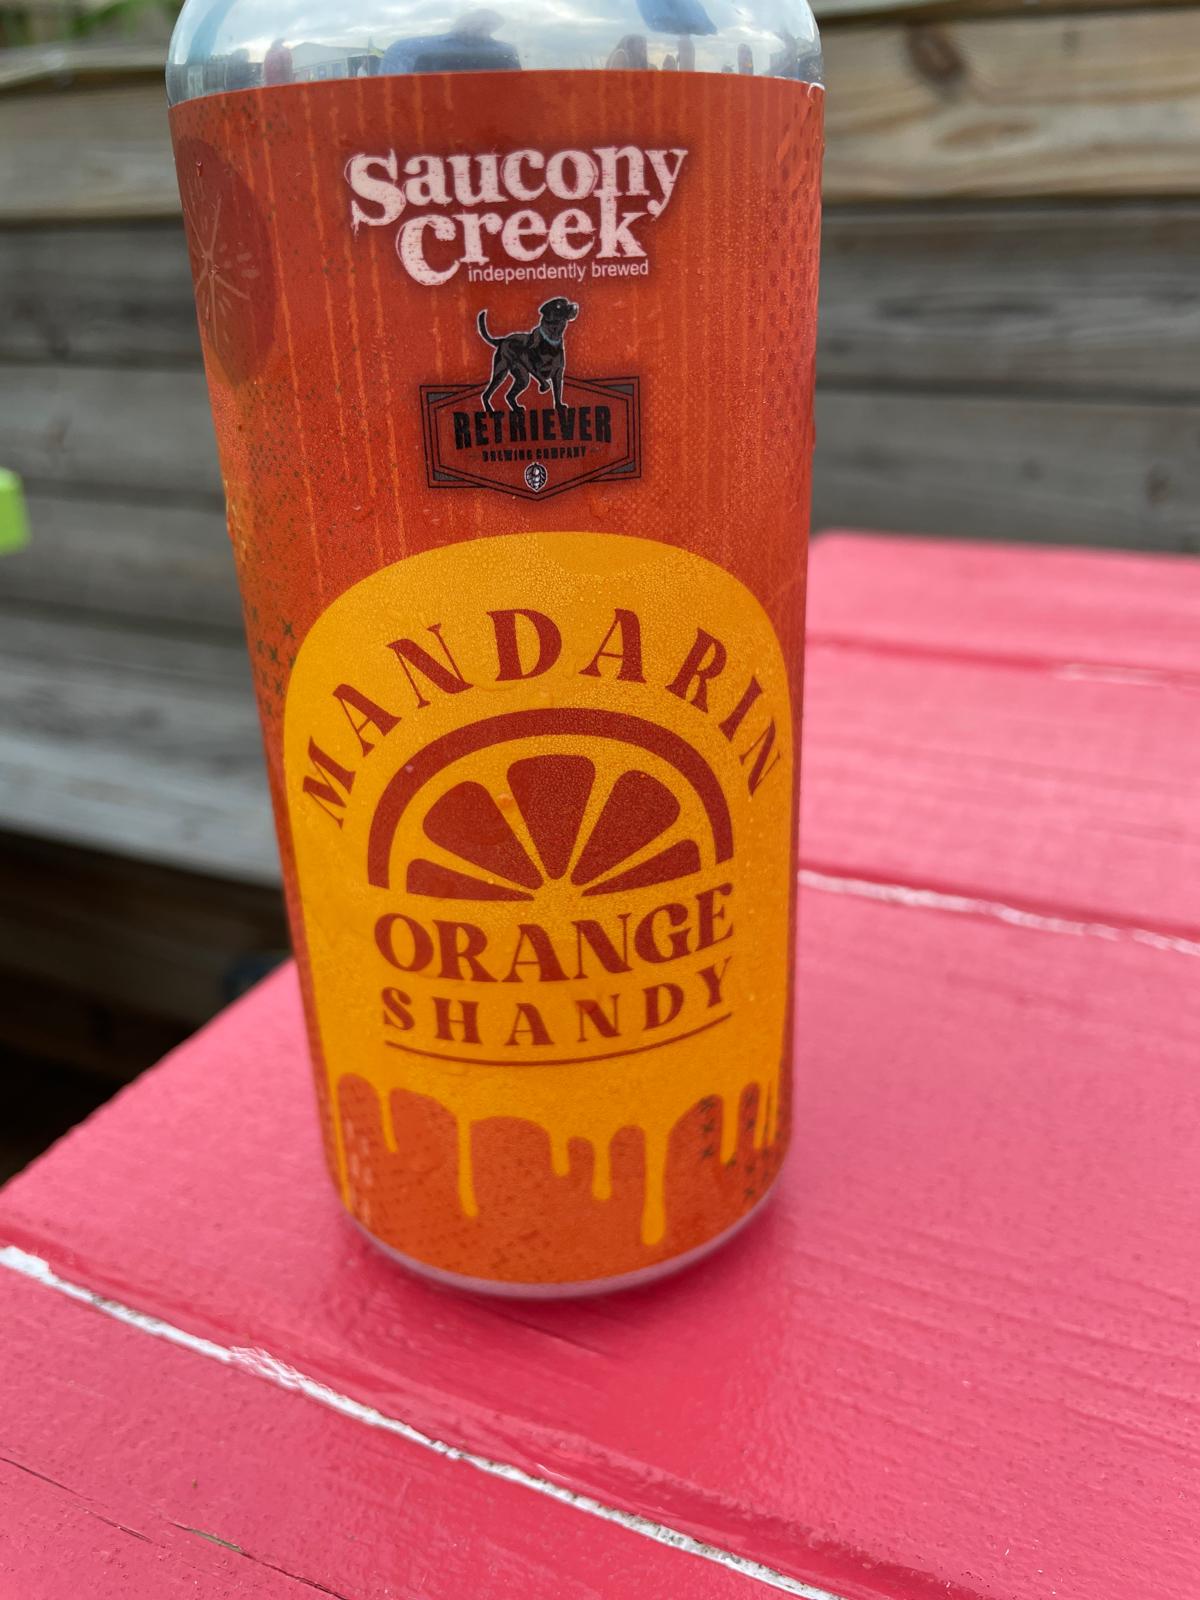 Mandarin Orange Shandy